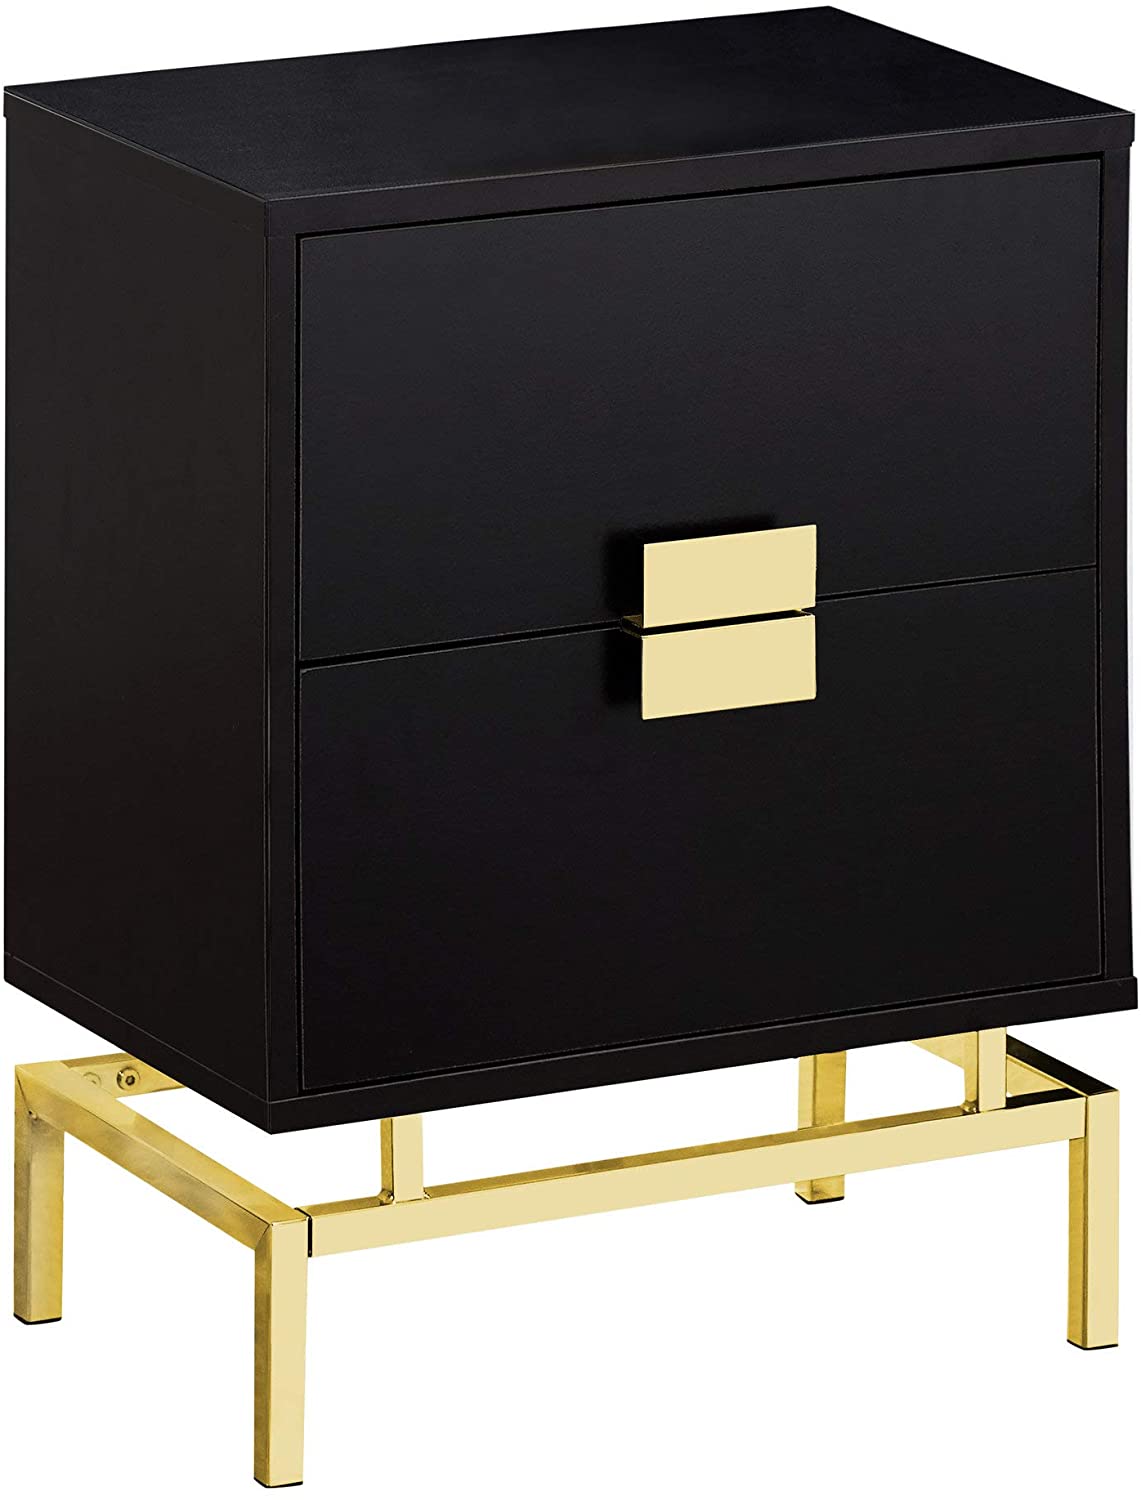 modern gold and black bed side dresser